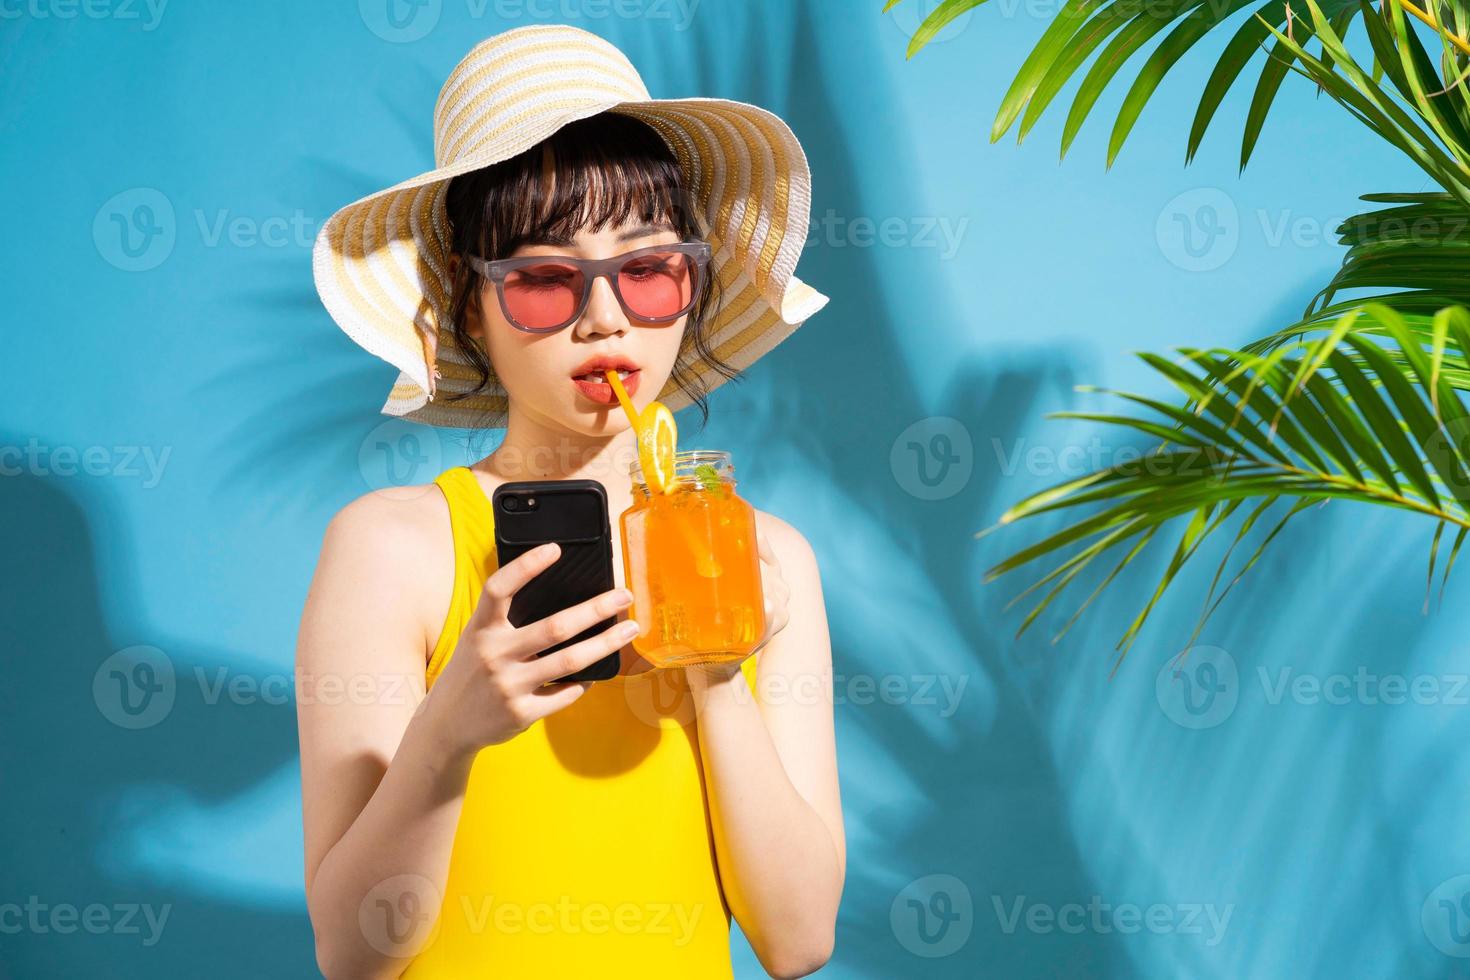 belle femme asiatique portant une combinaison jaune sur fond bleu et buvant du jus, concept d'été photo